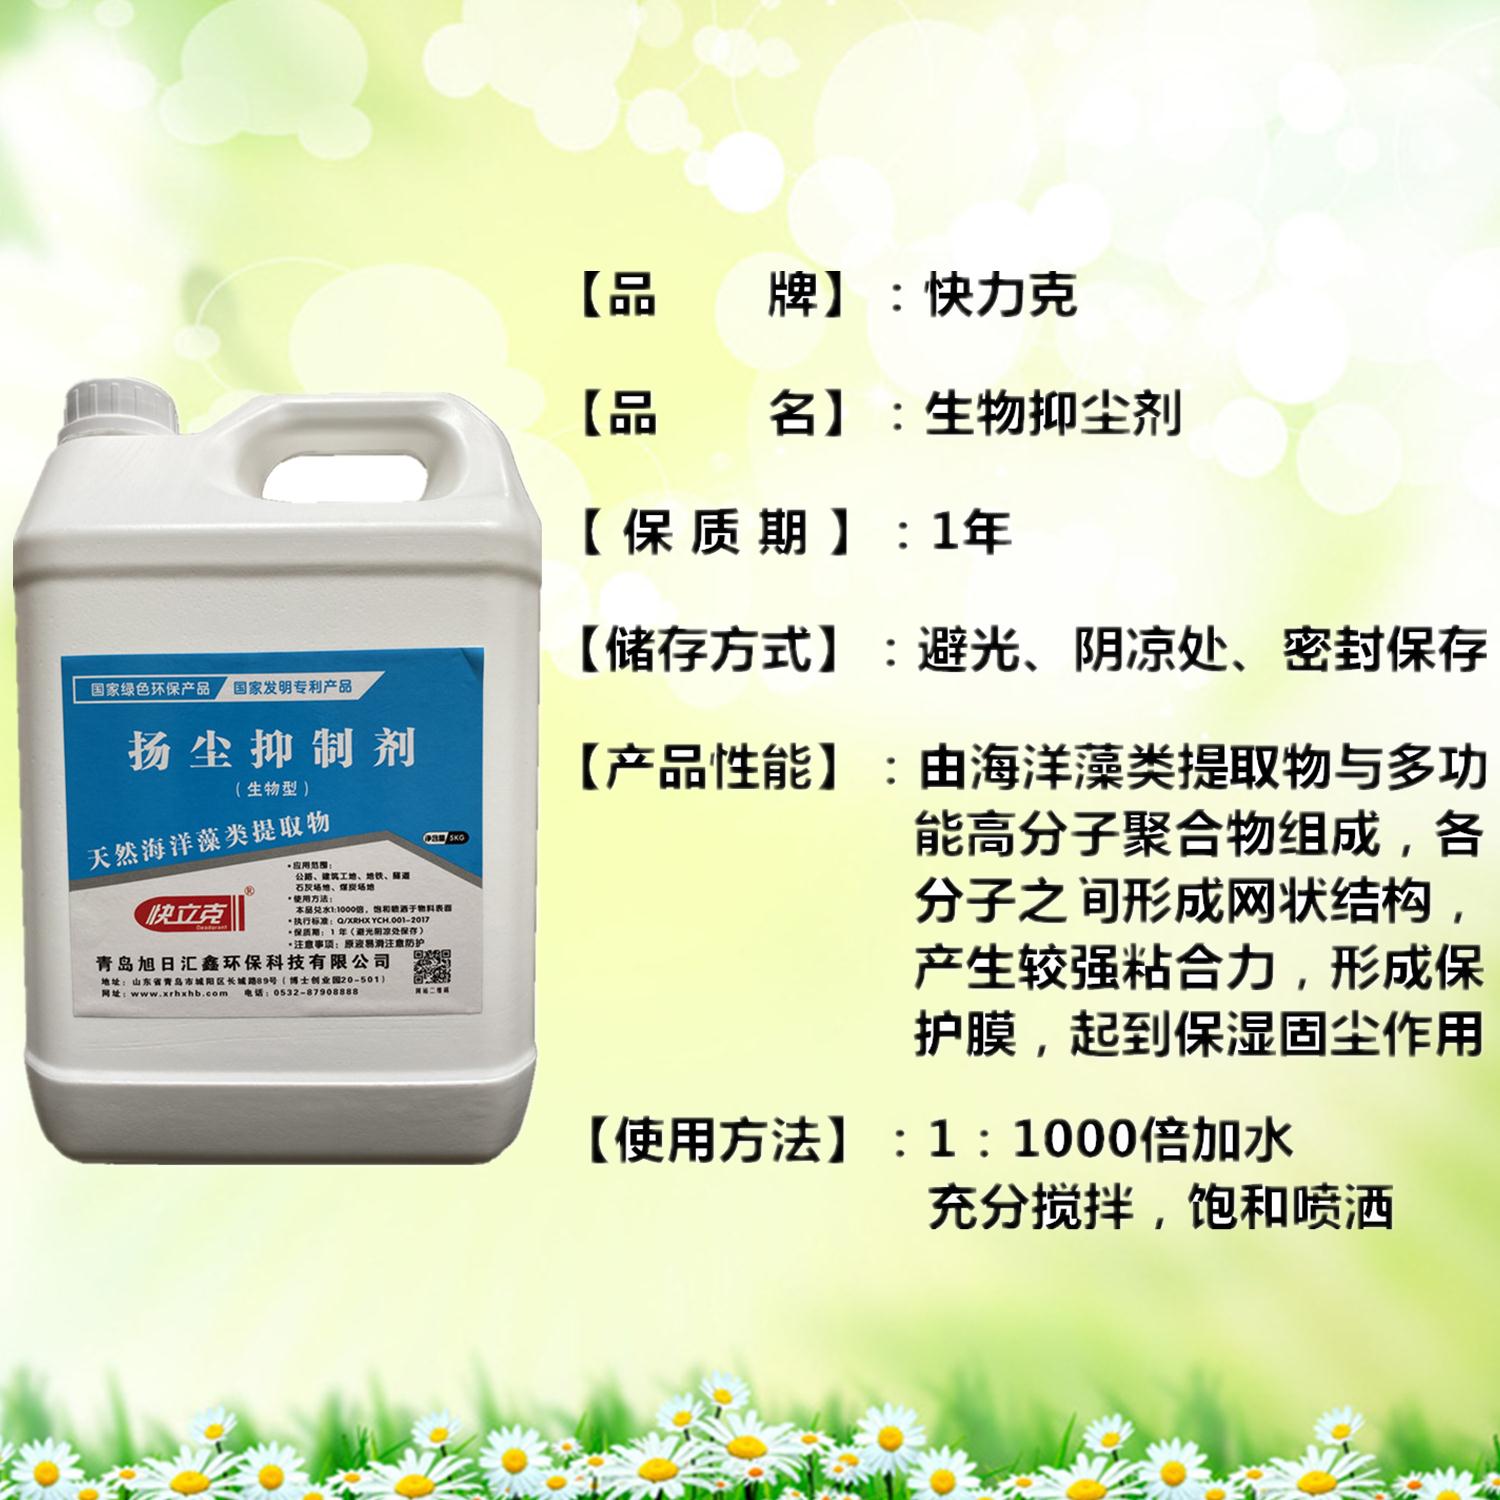 環保抑塵劑生產廠家 潔廁劑配方 濃縮原液